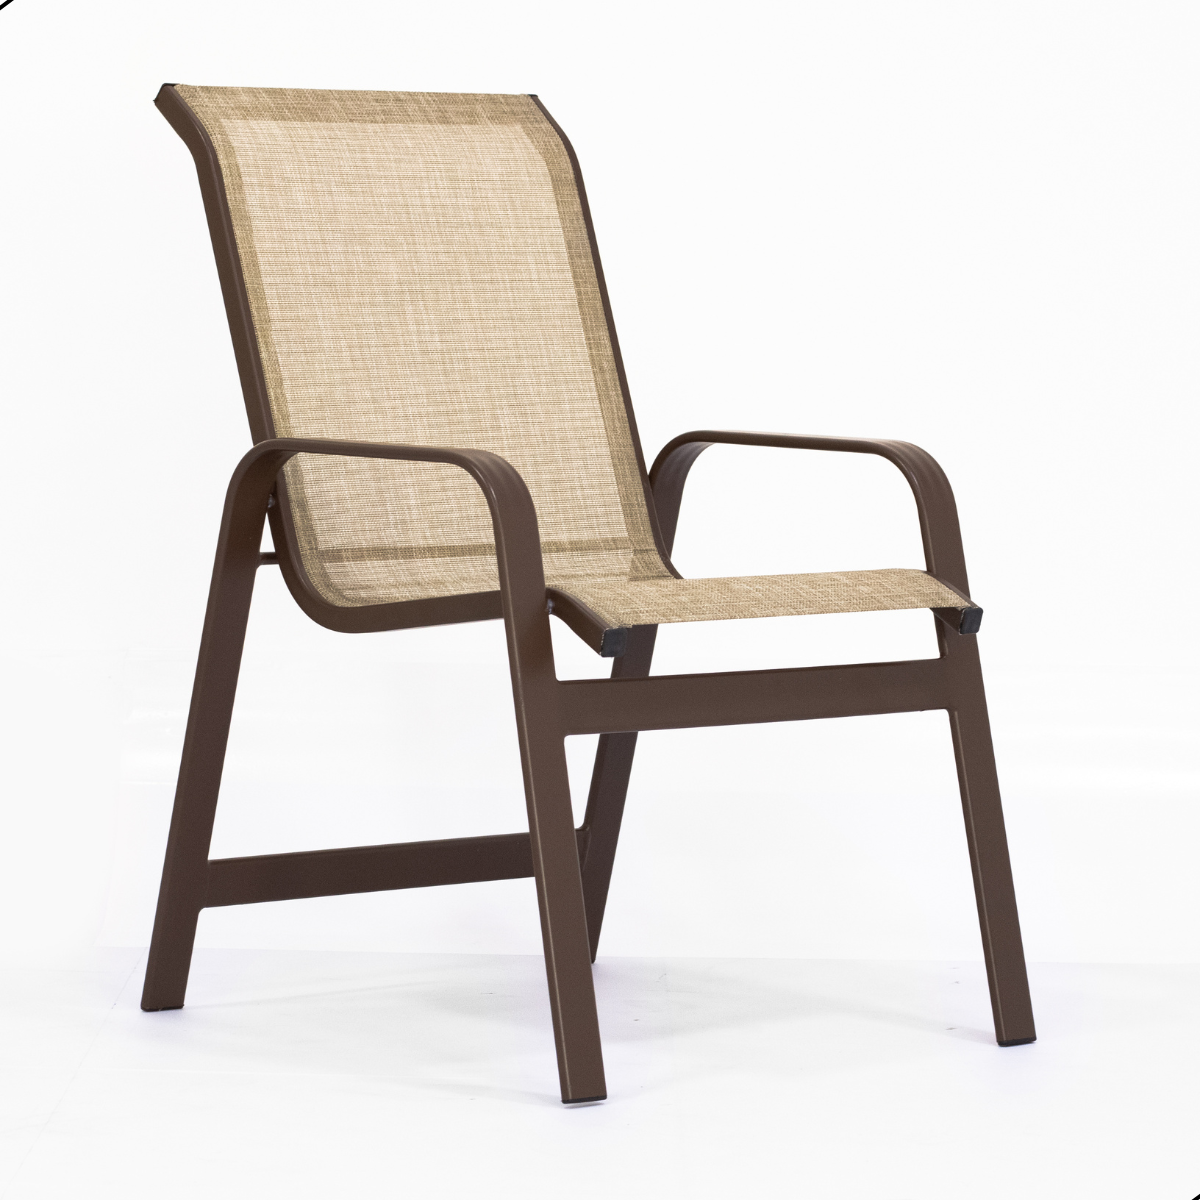 Kit 4 Cadeiras para Jardim Piscina Varanda em Alumínio Marrom e Tela Sling Capuccino - 3